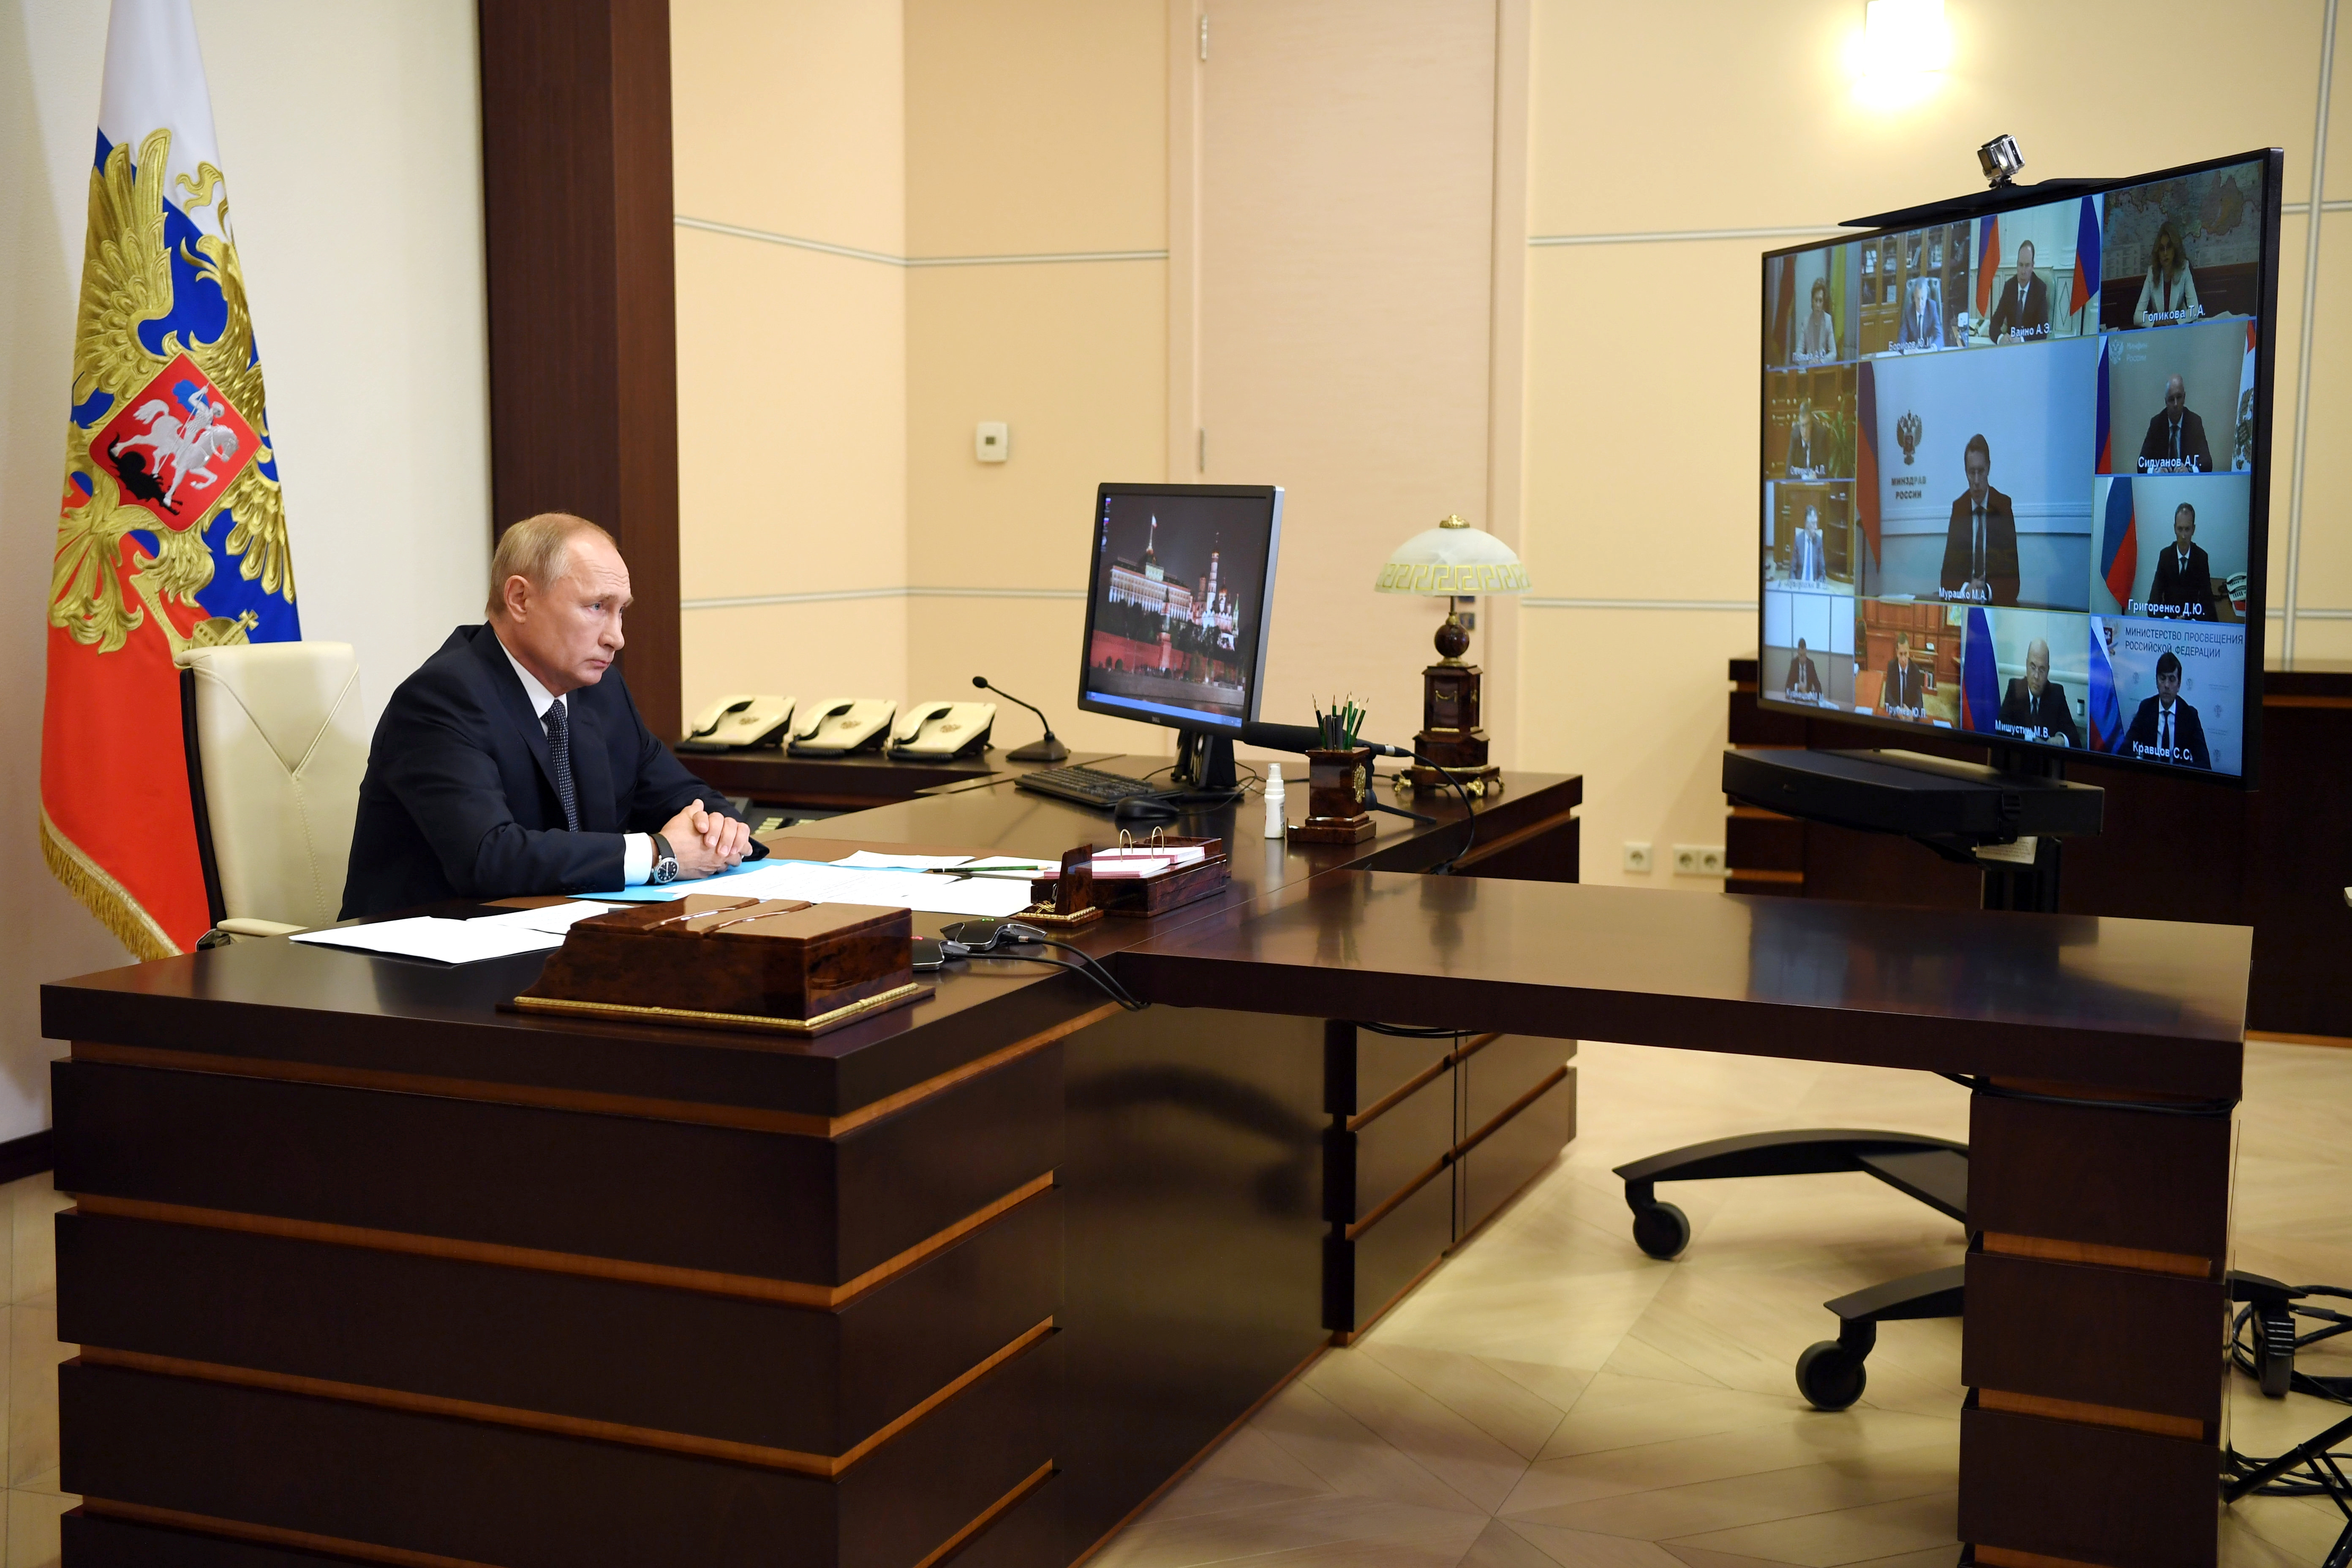 El presidente ruso, Vladimir Putin, preside una reunión con miembros del gobierno a través de un enlace de video. (Foto: Sputnik/Aleksey Nikolskyi/Kremlin via REUTERS)